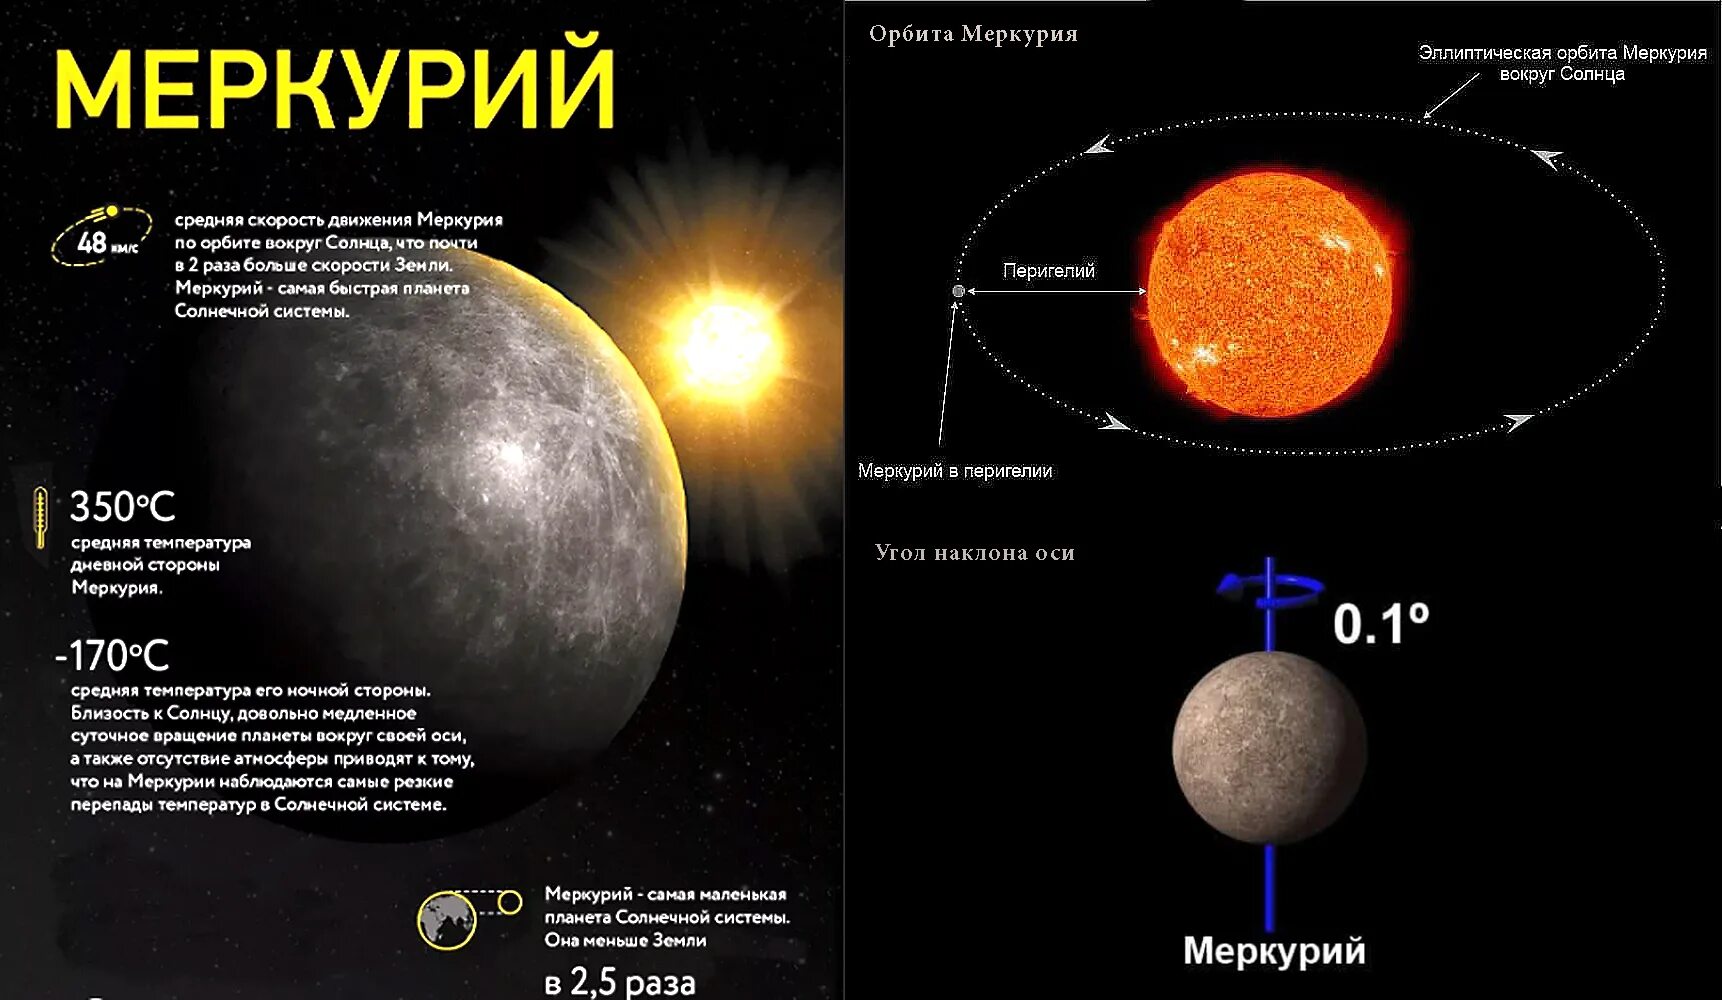 Солнечные сутки венеры. Направление вращения Меркурия. Меркурий Орбита вокруг солнца. Меркурий Планета угол наклона оси. Угол наклона оси вращения Меркурия.